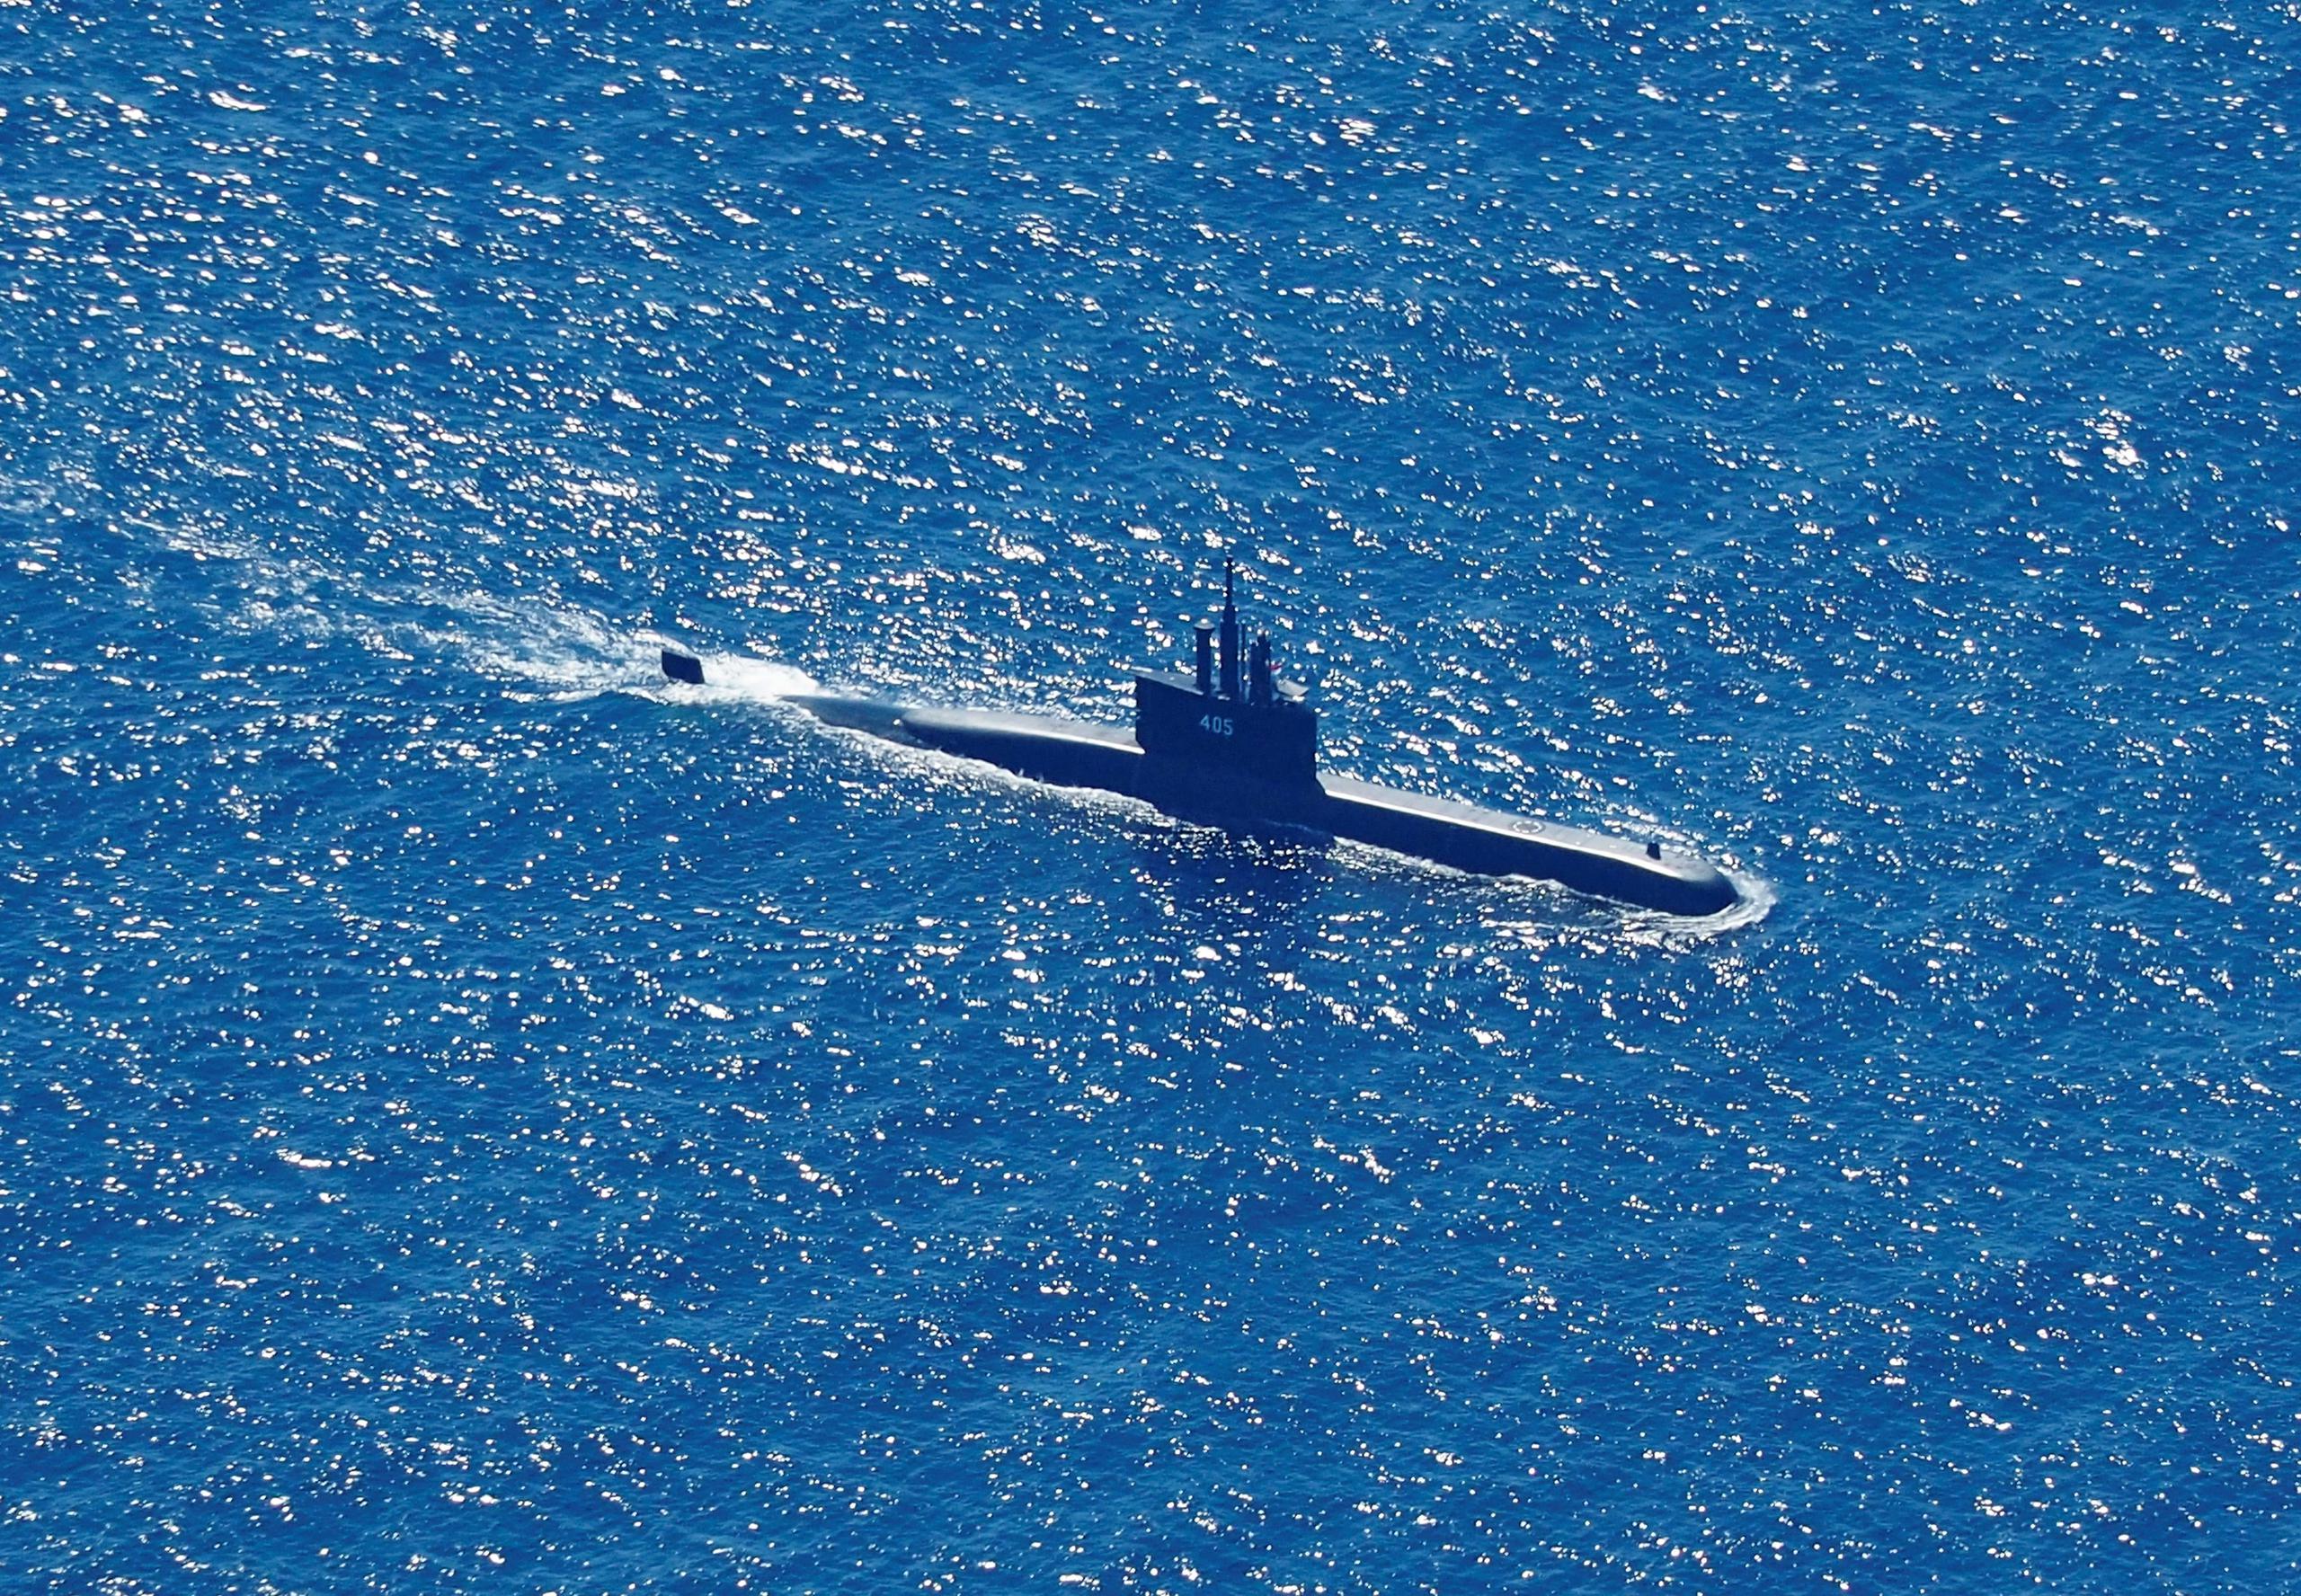 Foto aérea tomada desde un avión de patrulla marítima del 800 Escuadrón Aéreo de la 2a Ala Aérea del Centro de Aviación Naval (PUSPENERBAL), muestra al submarino de la Armada de Indonesia KRI Alugoro en misión de búsqueda del KRI Nanggala, un submarino de la Armada que desapareció durante una operación naval en las aguas de la isla de Bali, Indonesia, el 22 de abril de 2021.